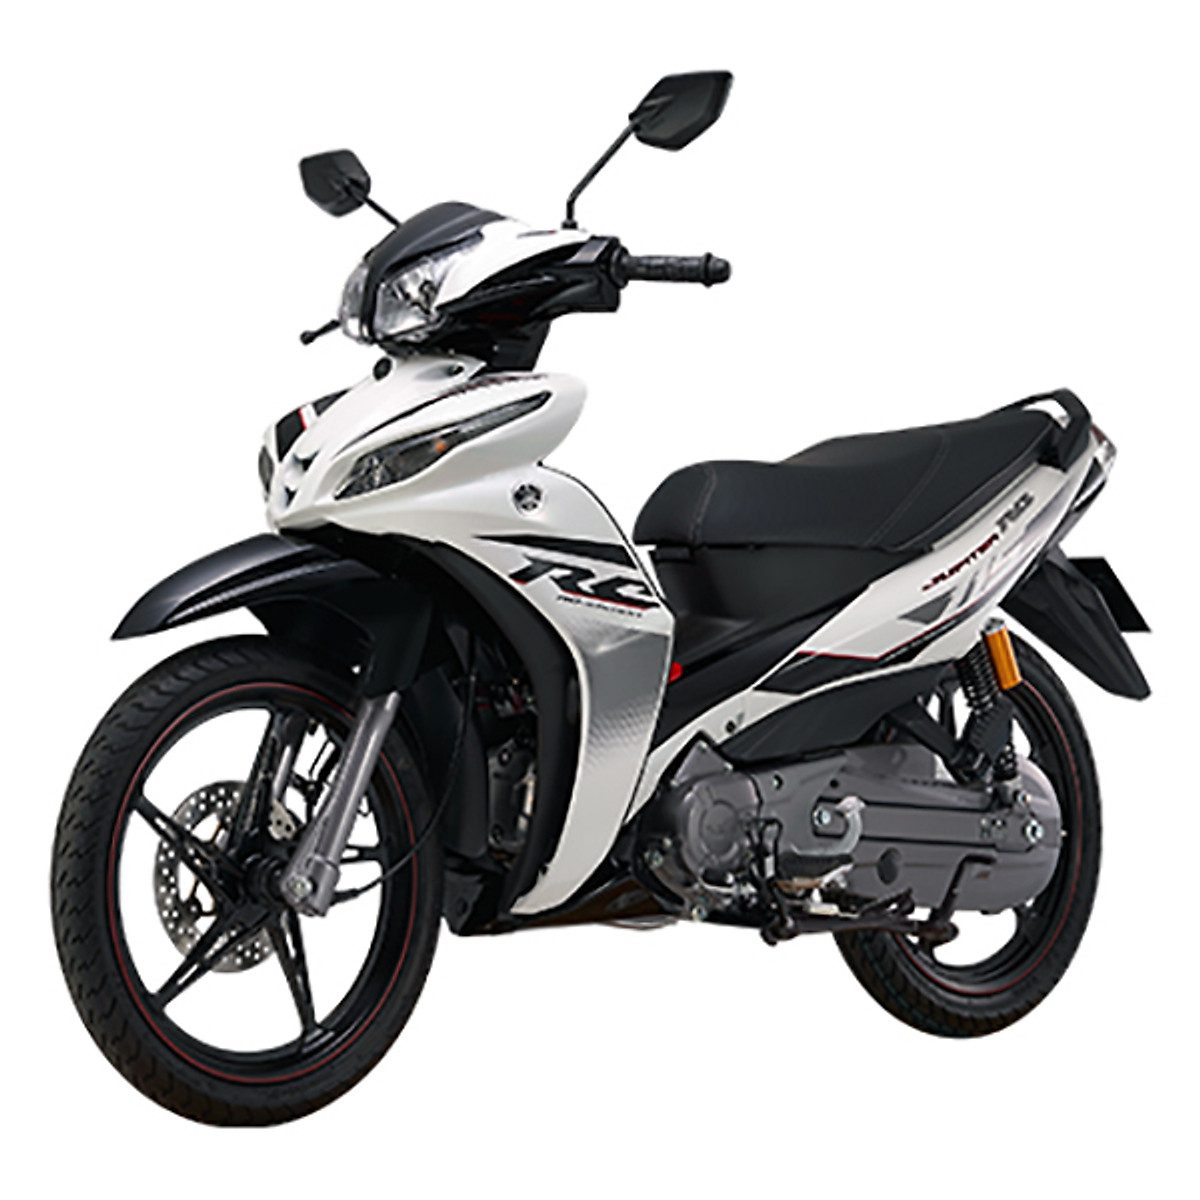 Yamaha Jupiter Z1 2020 chốt giá 285 triệu đồng tại Indonesia  Motosaigon